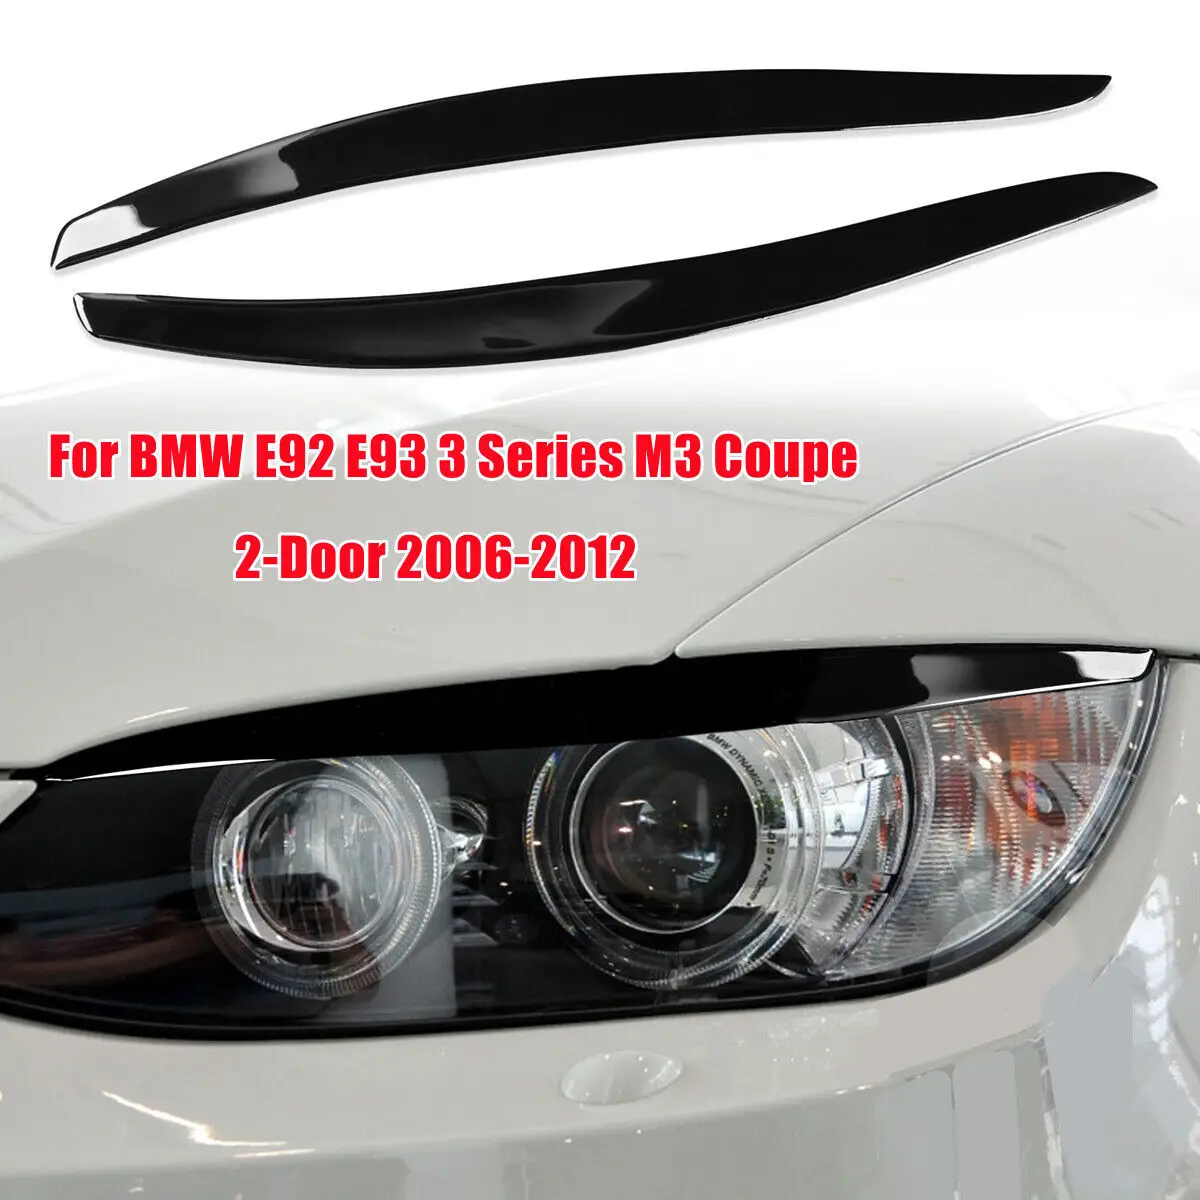 Для BMW 3 Серии E92 E93 Coupe 2-Дверный 2006-2012 Черная Автомобильная Передняя Фара Для Бровей, Накладка на Веко, Наклейка, Декоративная Рамка1